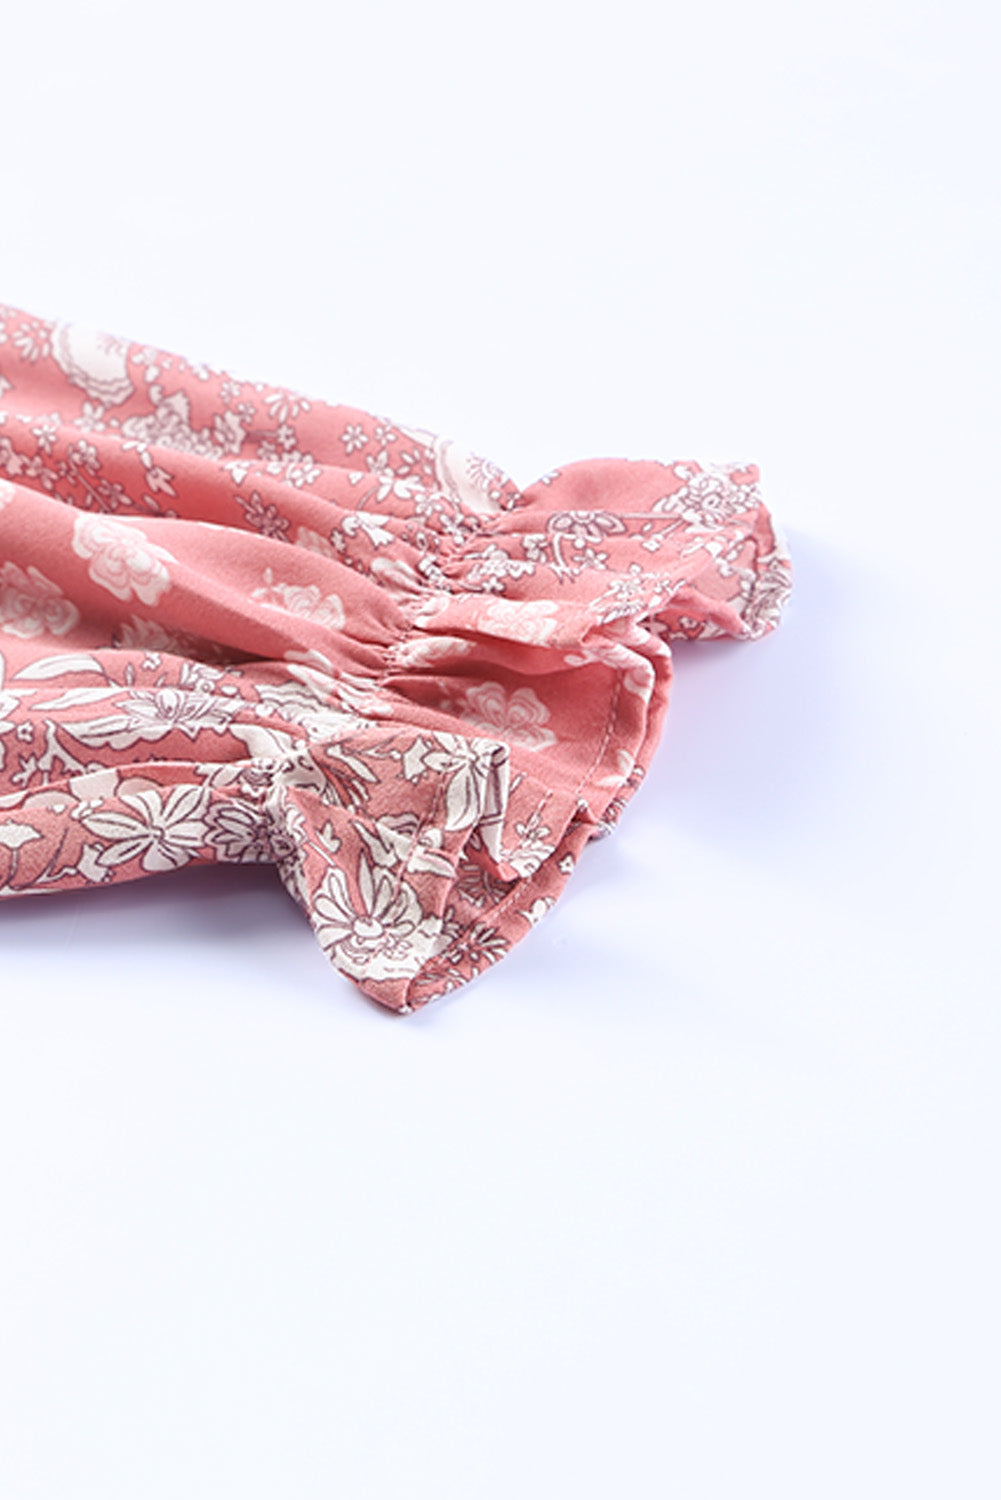 Rosafarbene Bluse mit böhmischem Aufdruck, Puffärmeln, kurvigem Schößchen